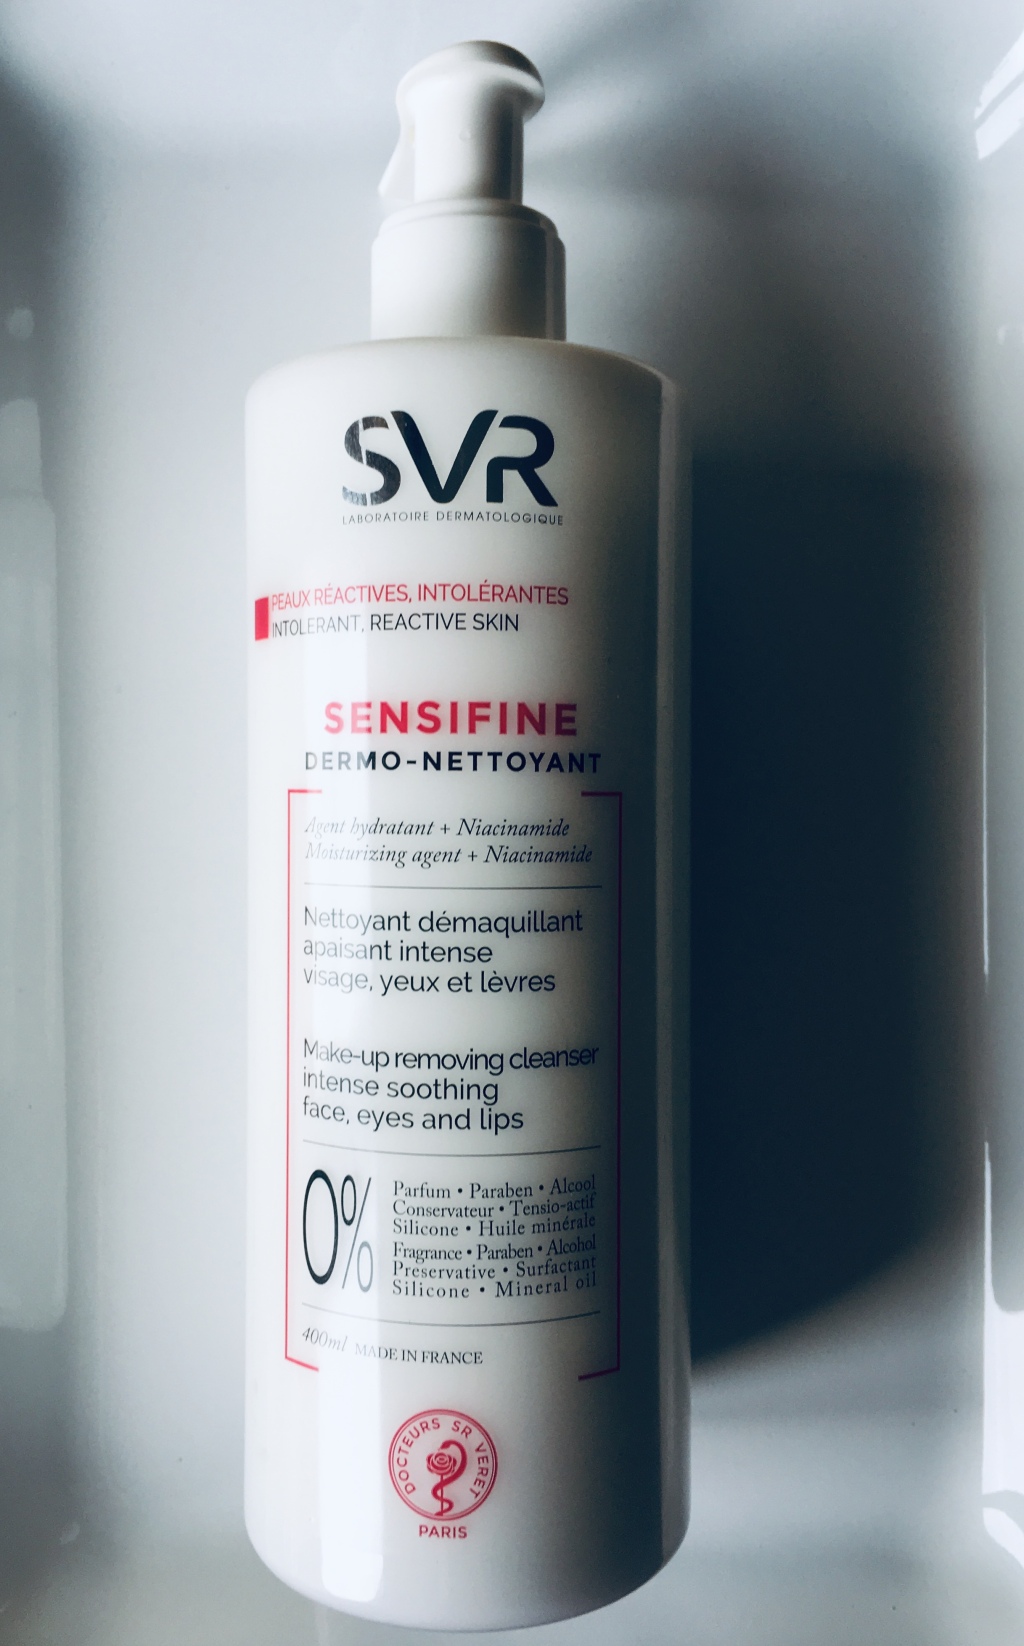 SVR SENSIFINE Makeup Removing Cleanser – Review